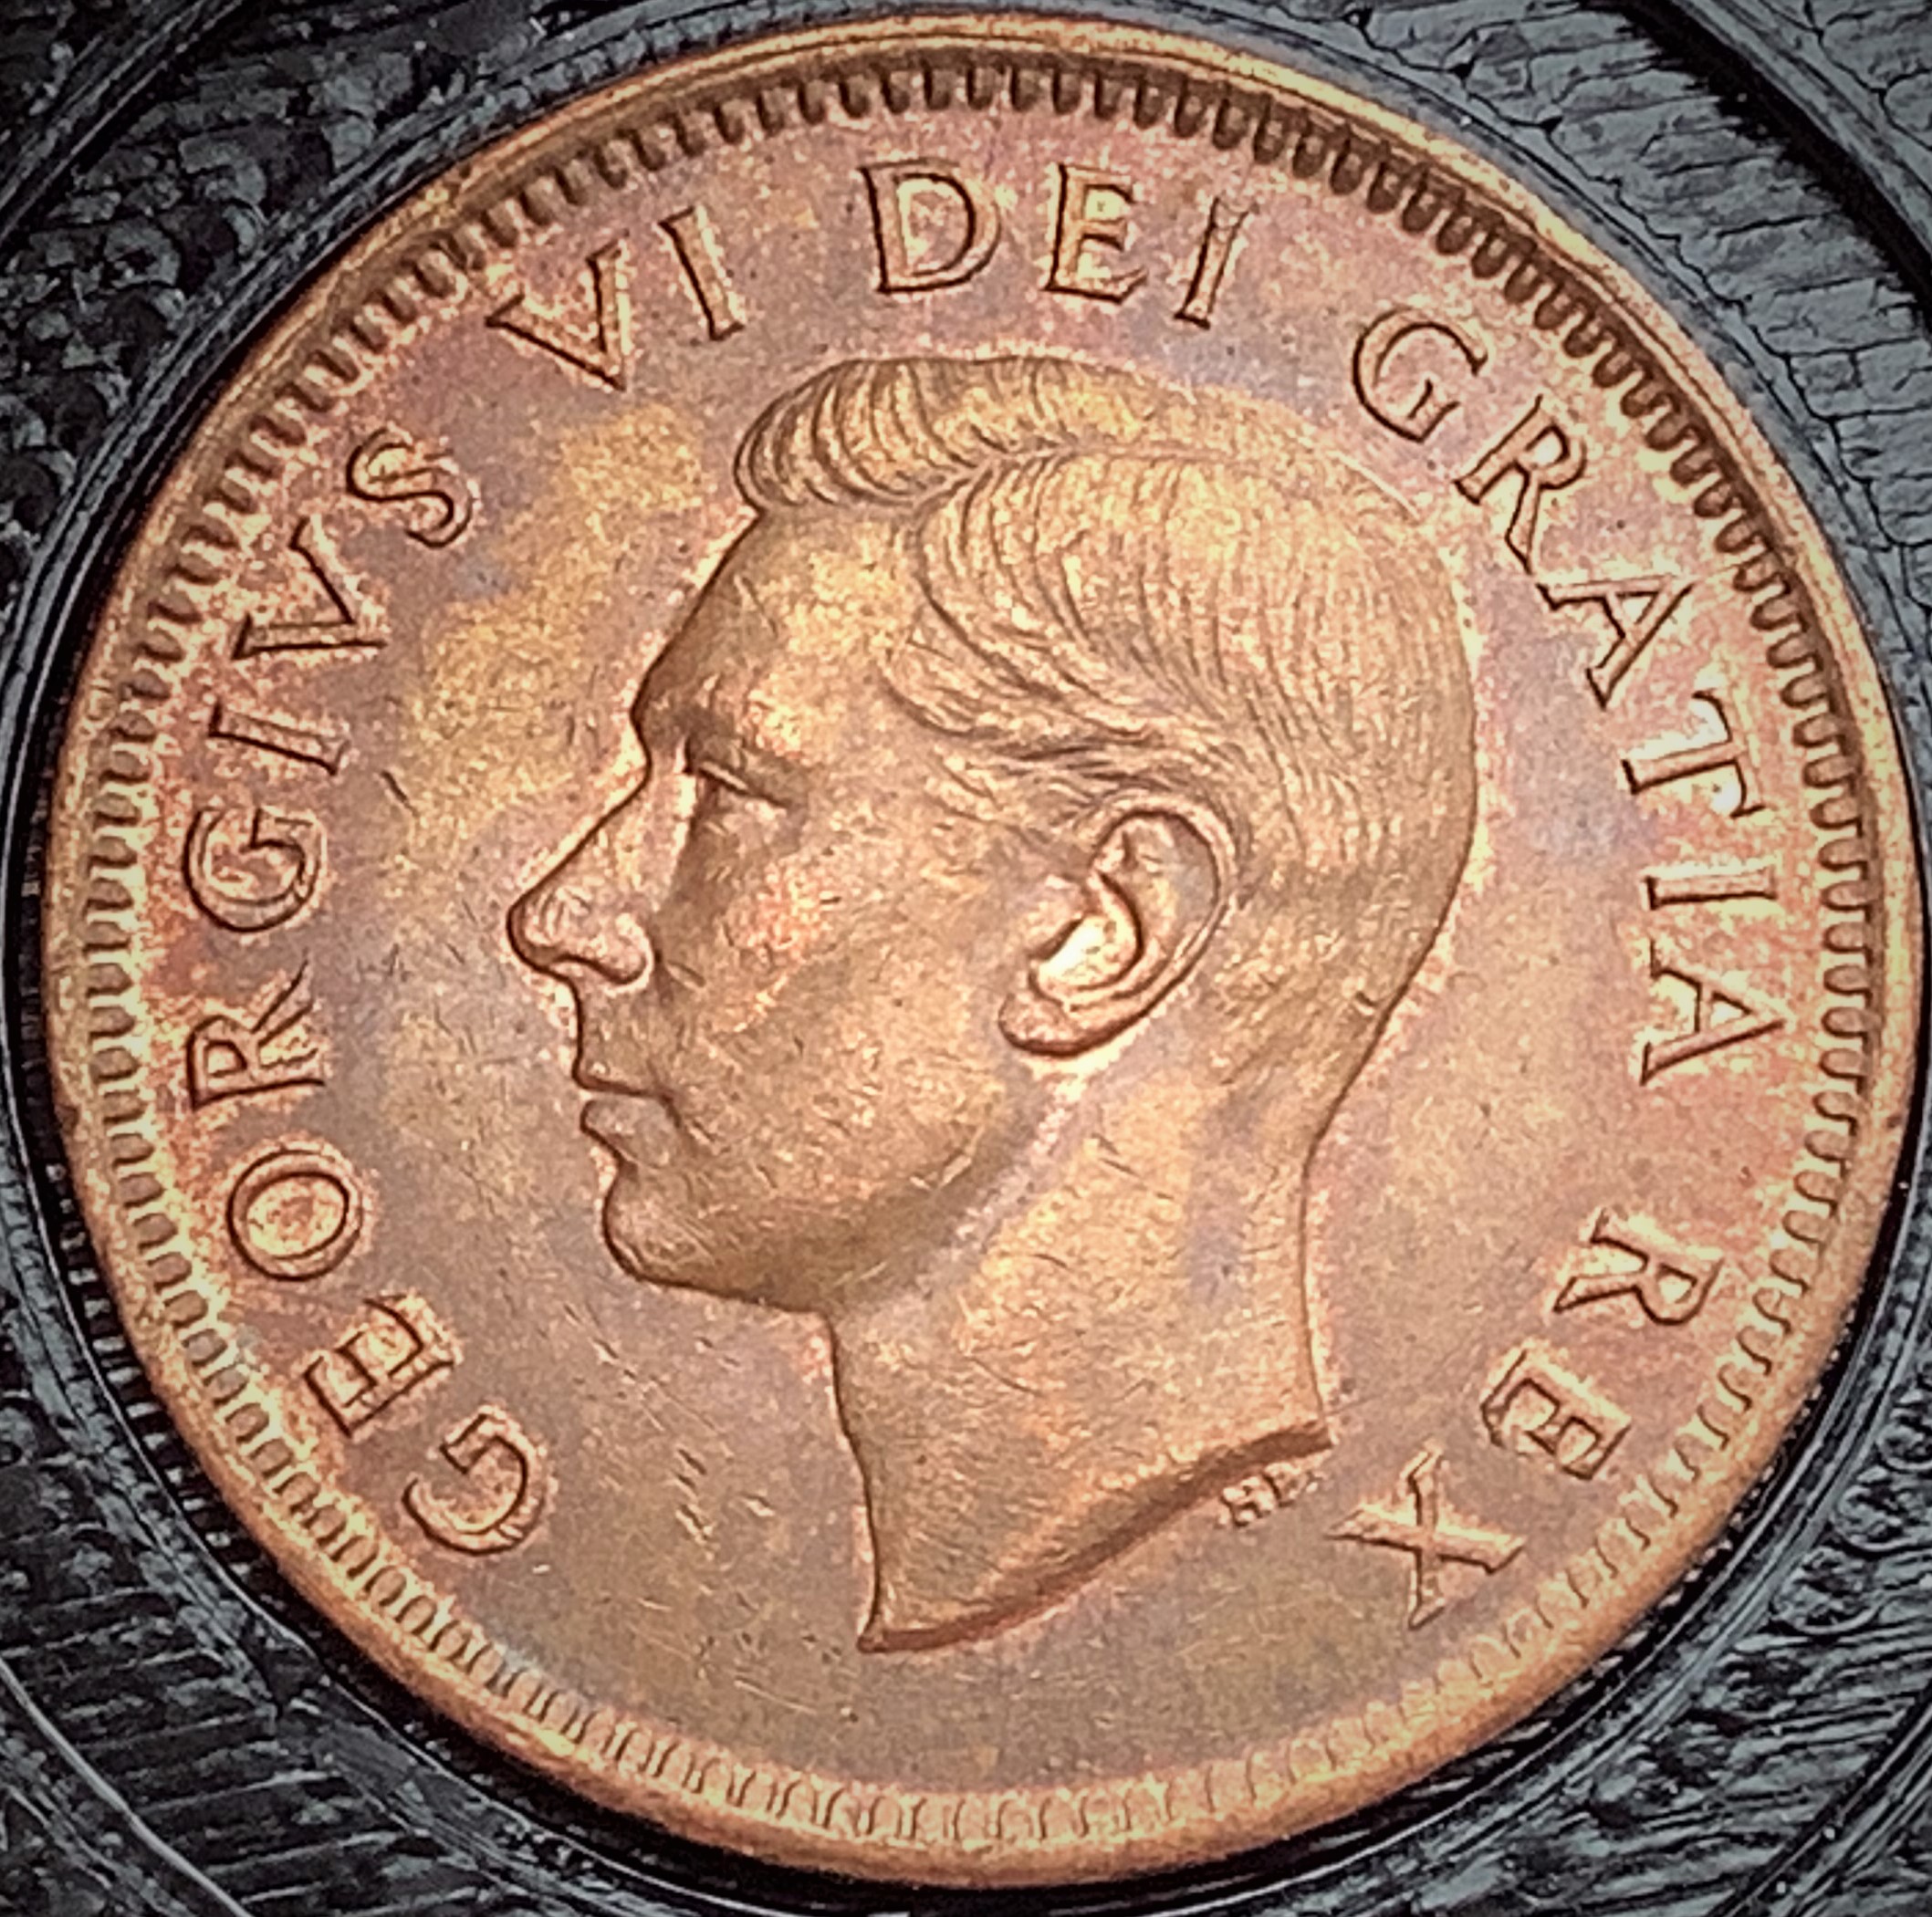 1 cent 1948 grosses denticules.jpg